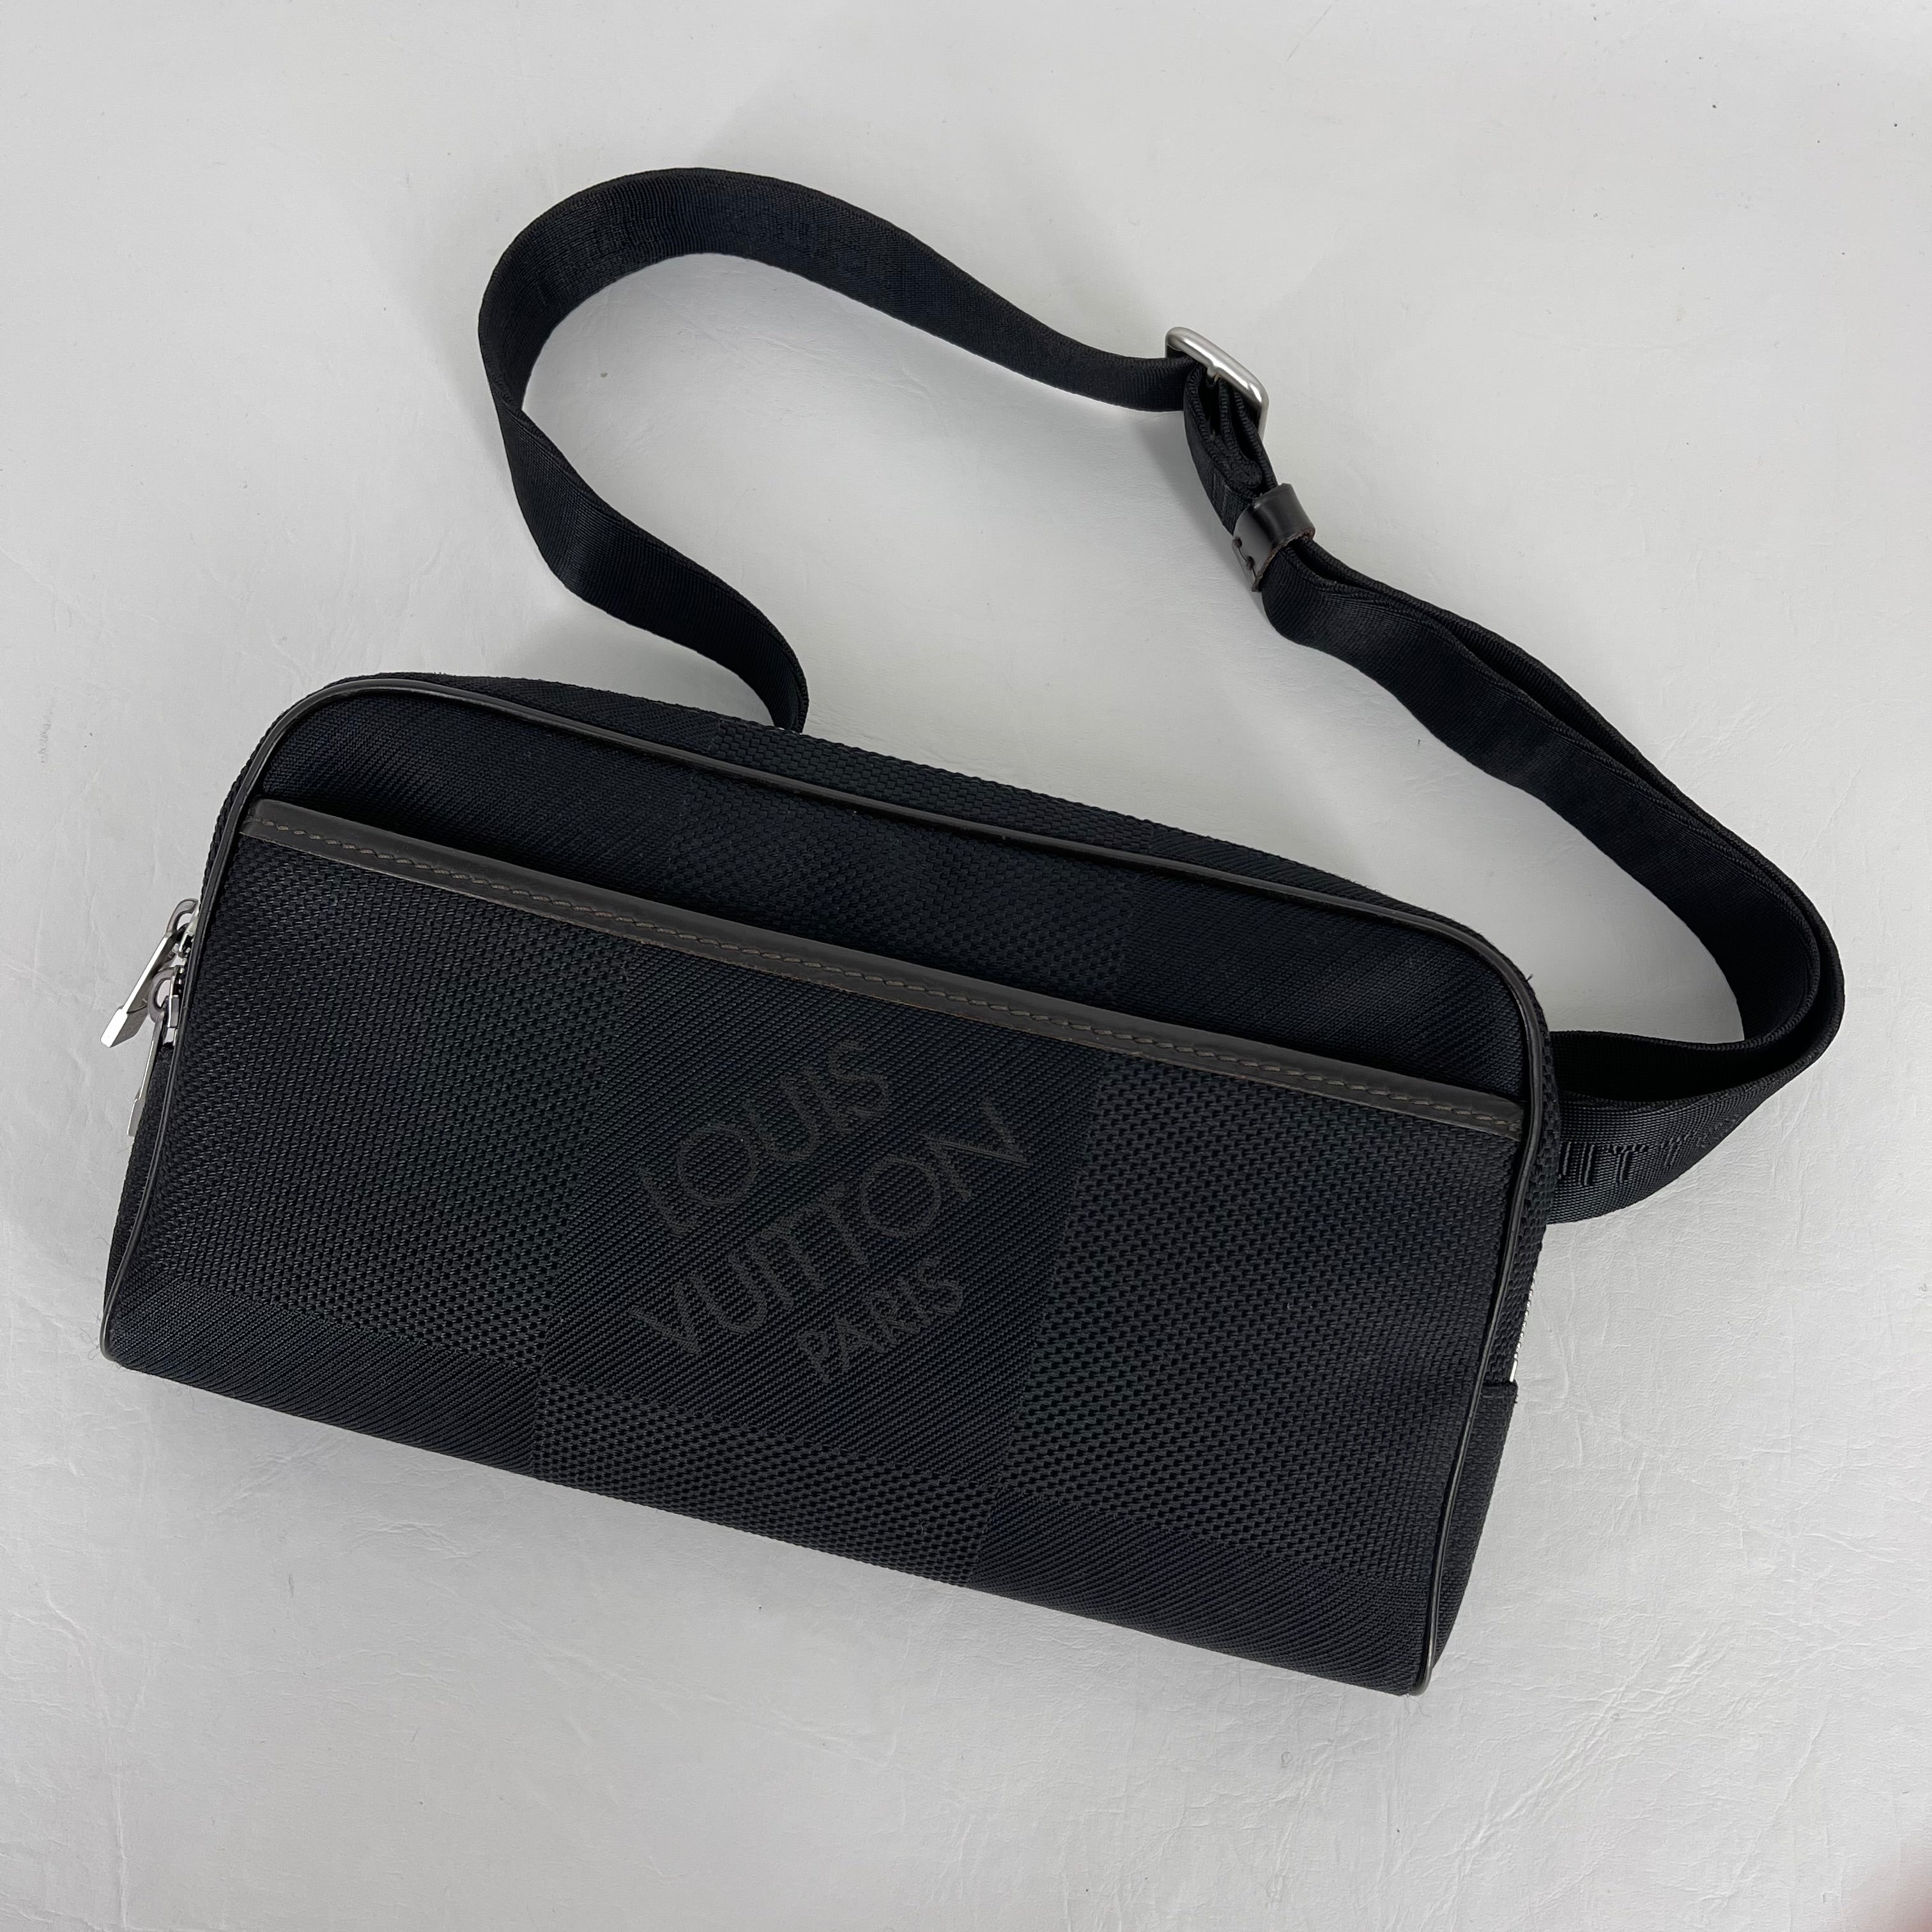 Extension-fmedShops, Second Hand Louis Vuitton Geant Bags